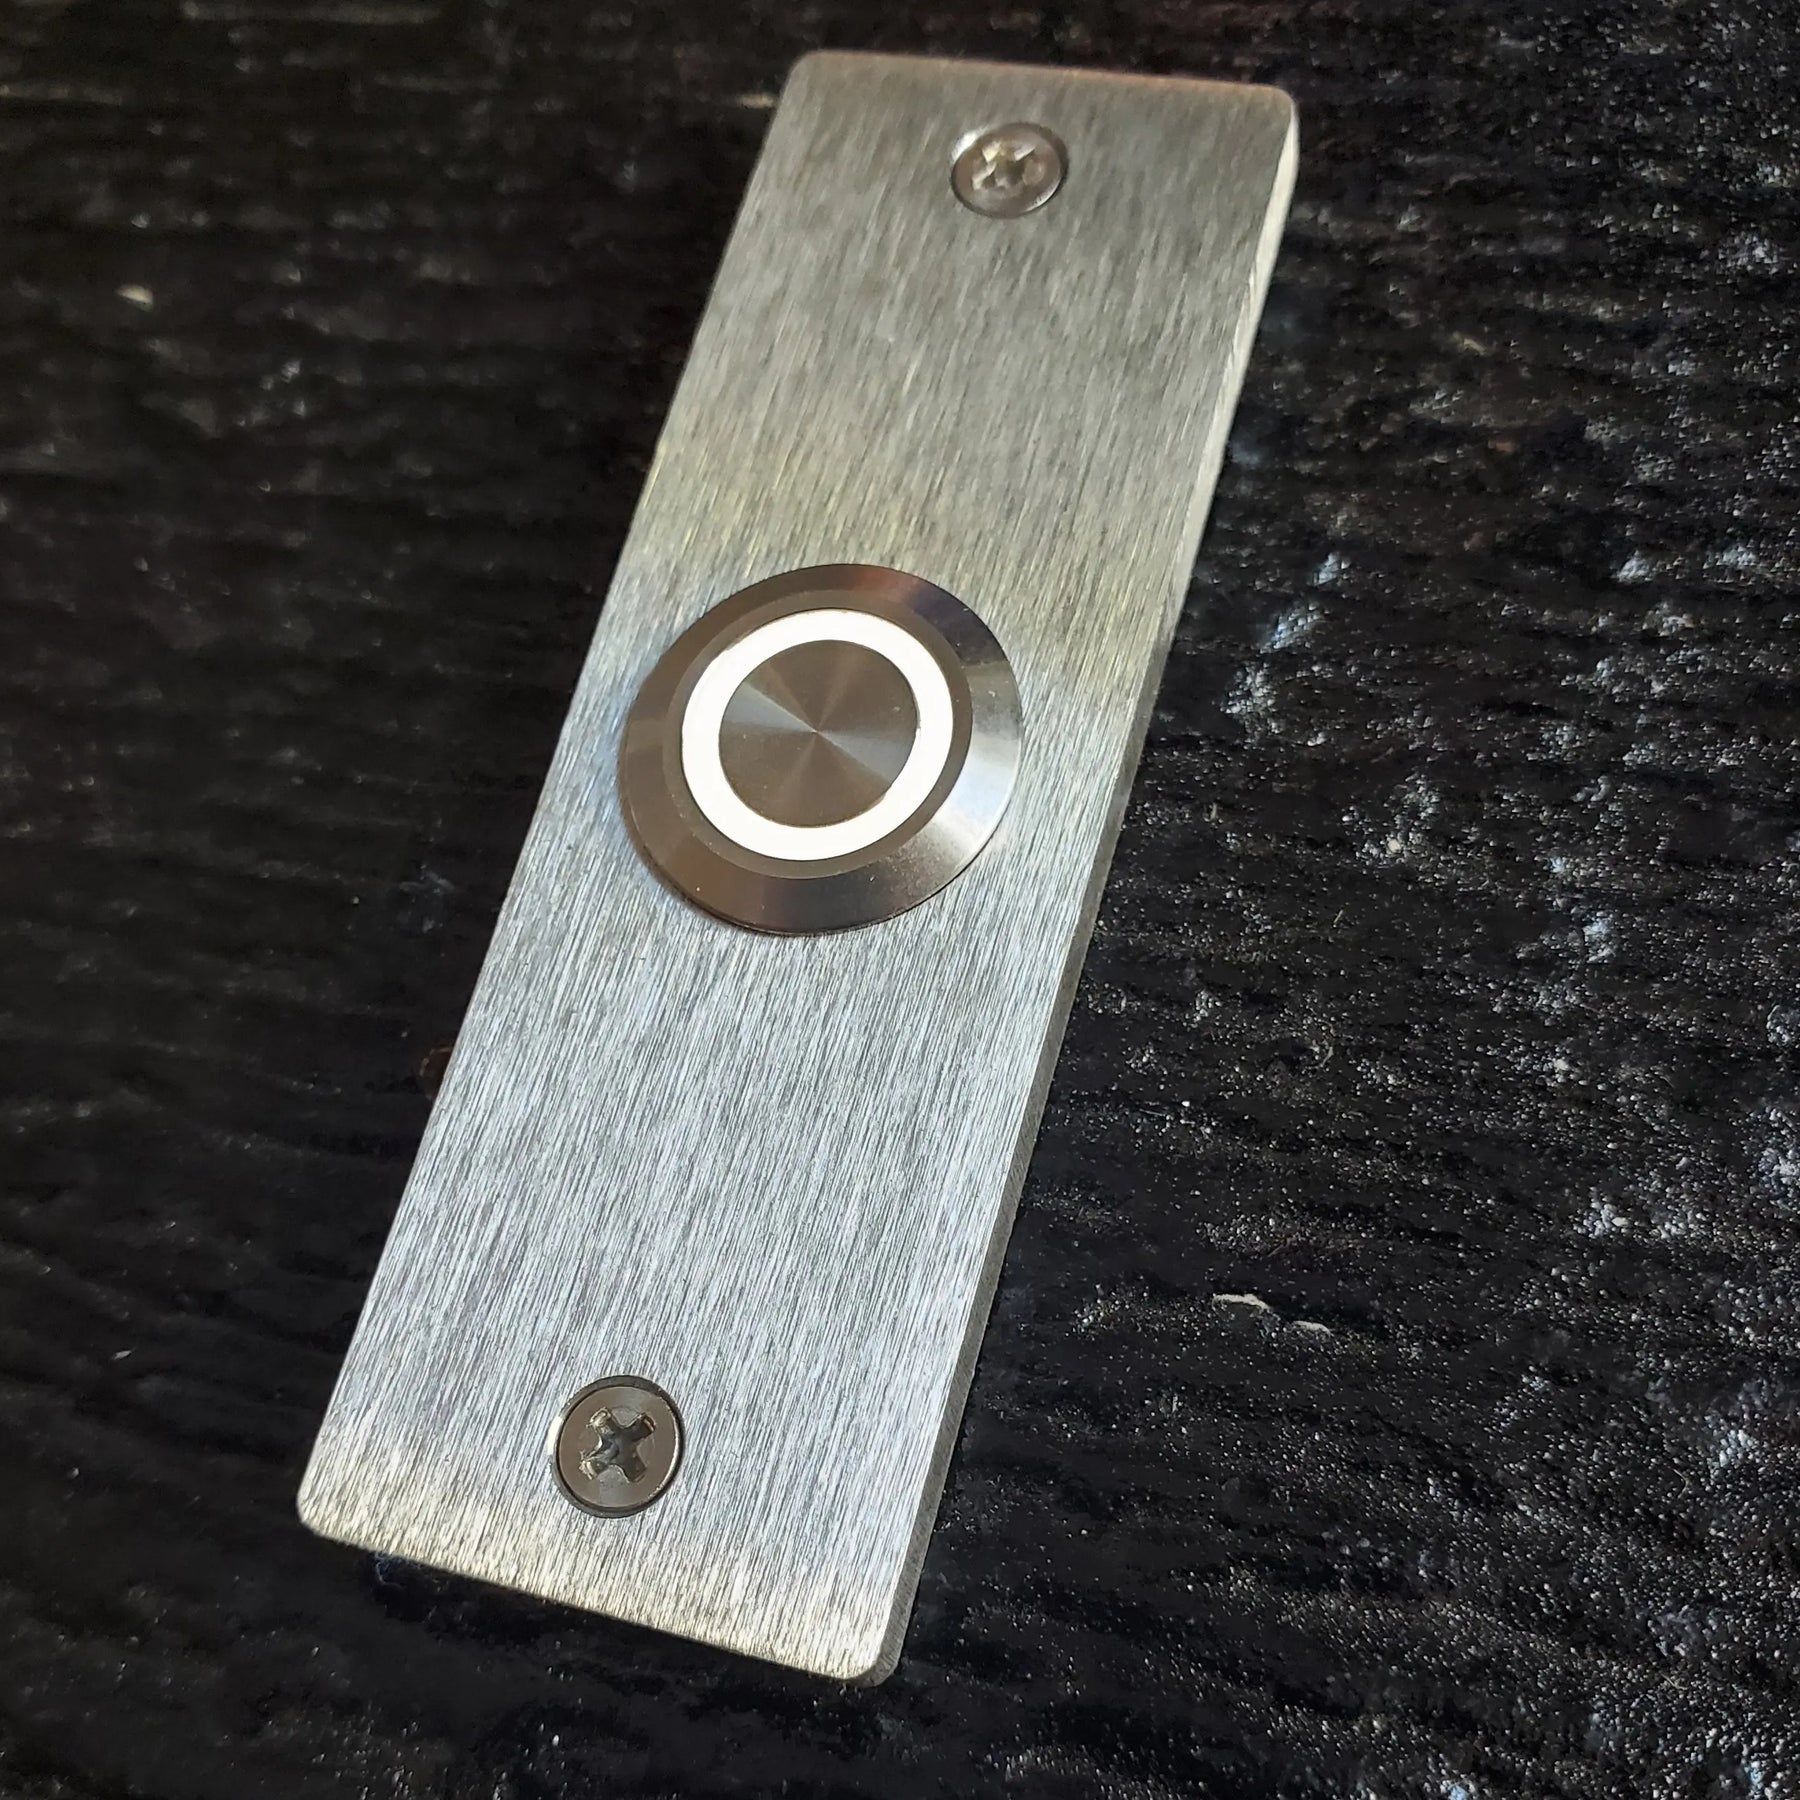 Stainless Steel Narrow Doorbell